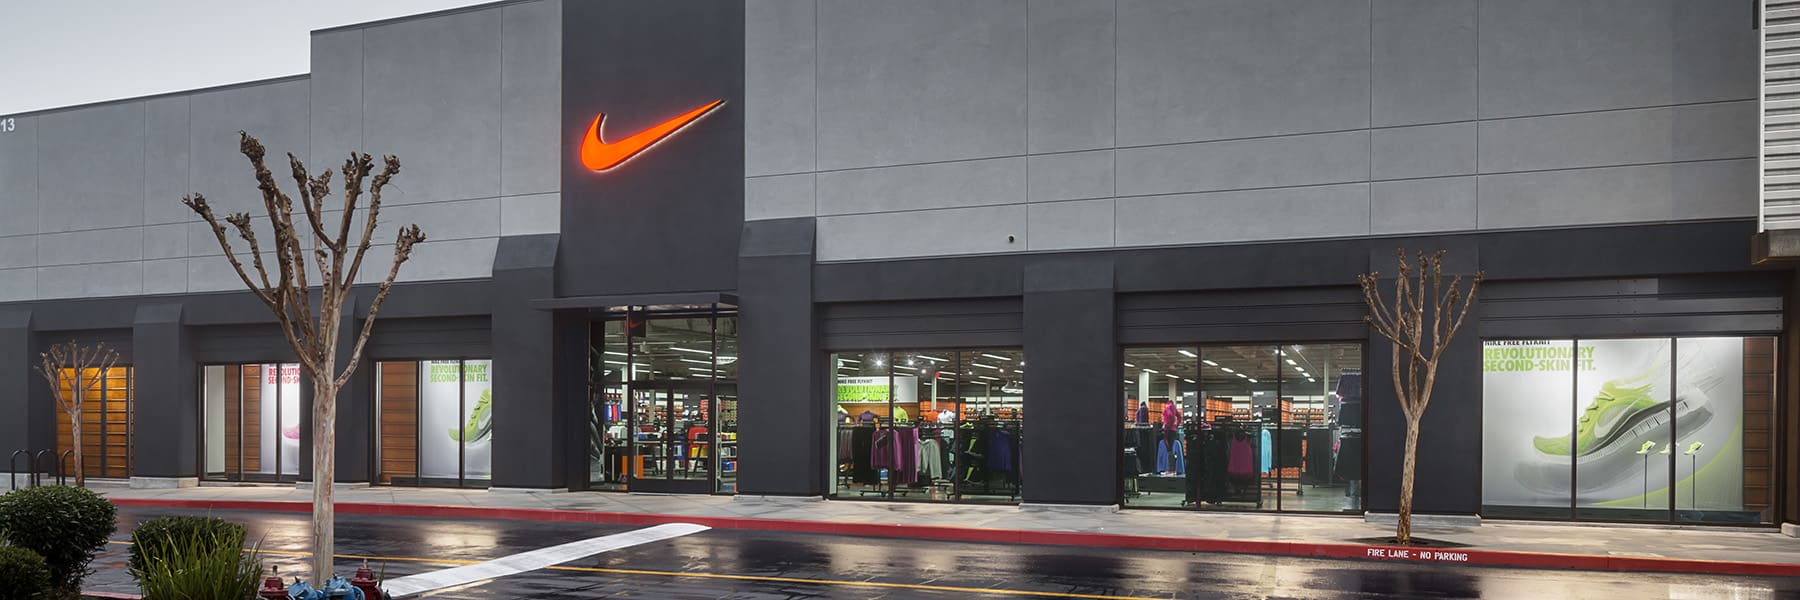 Nike Factory Store - San Jose. Jose, USA. ES